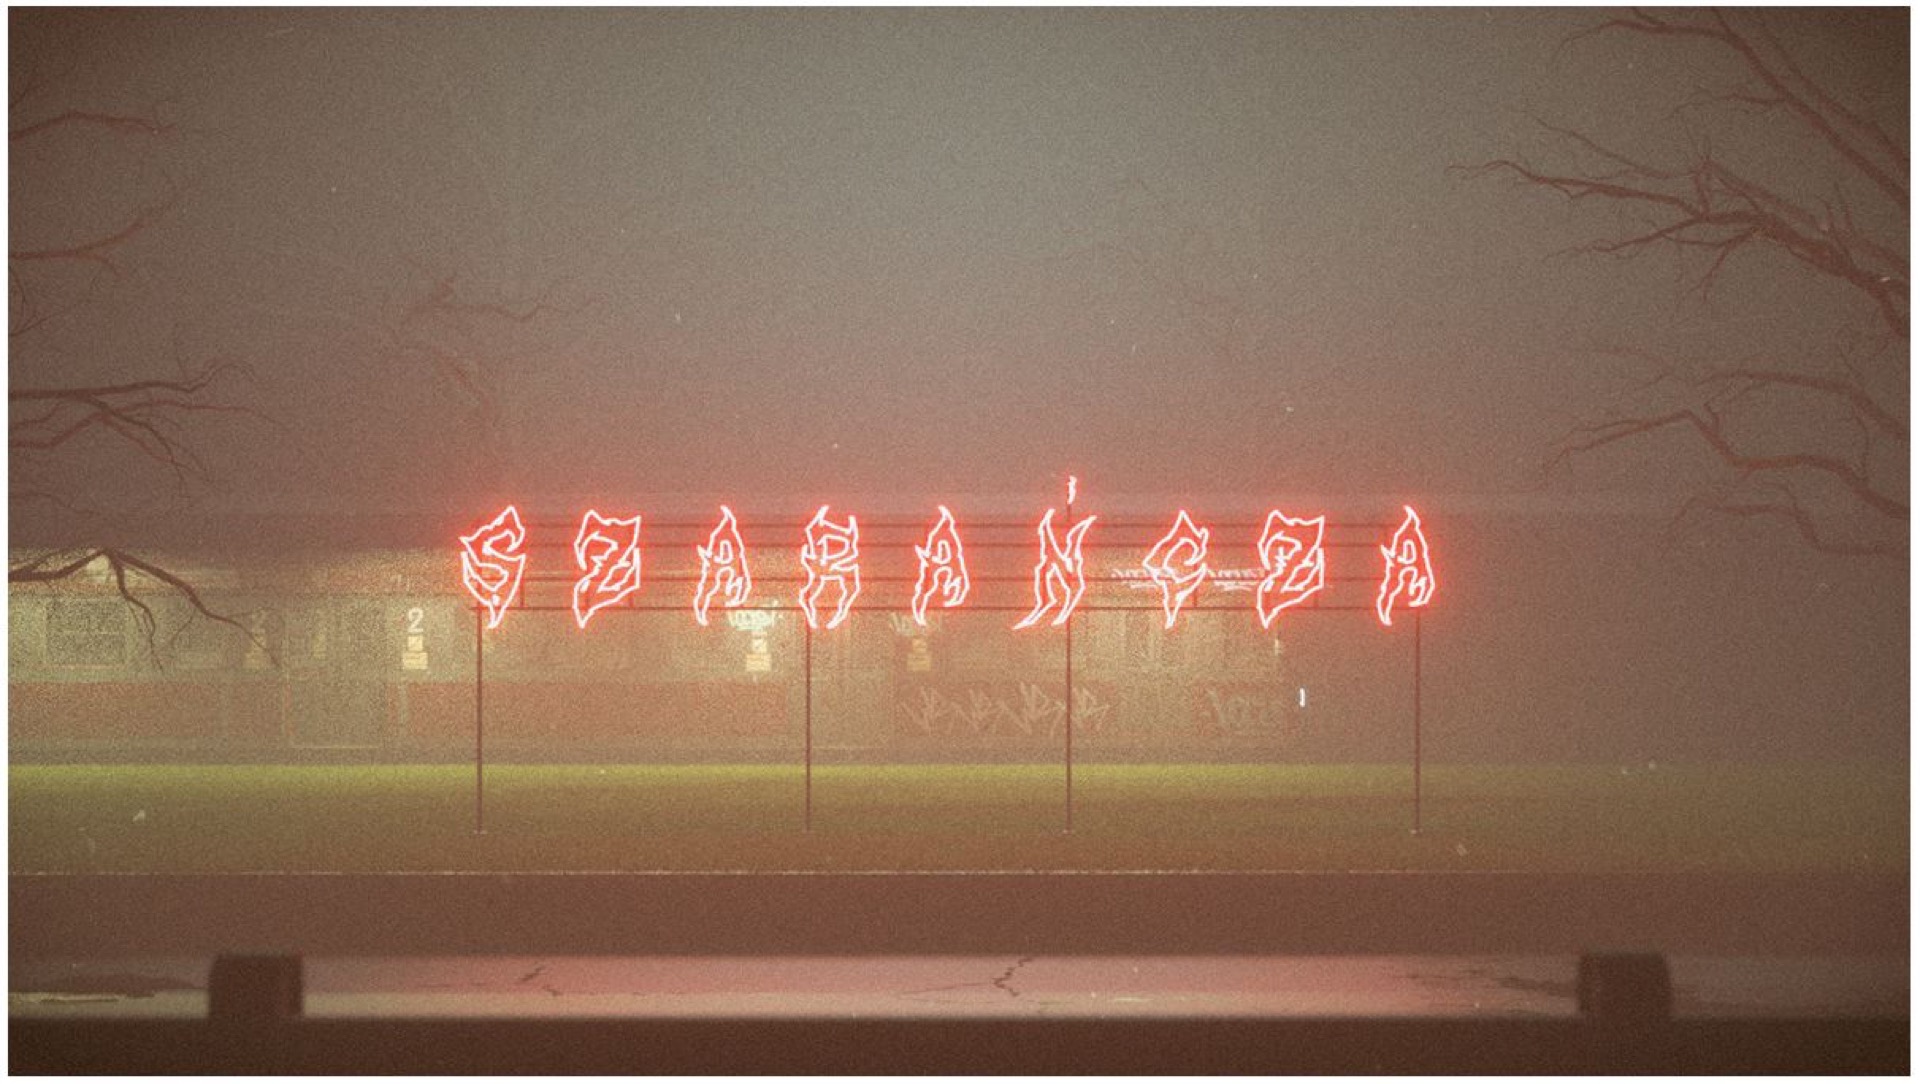 stacja kolejowa z czerwonym neonem z napisem "Szarańcza"